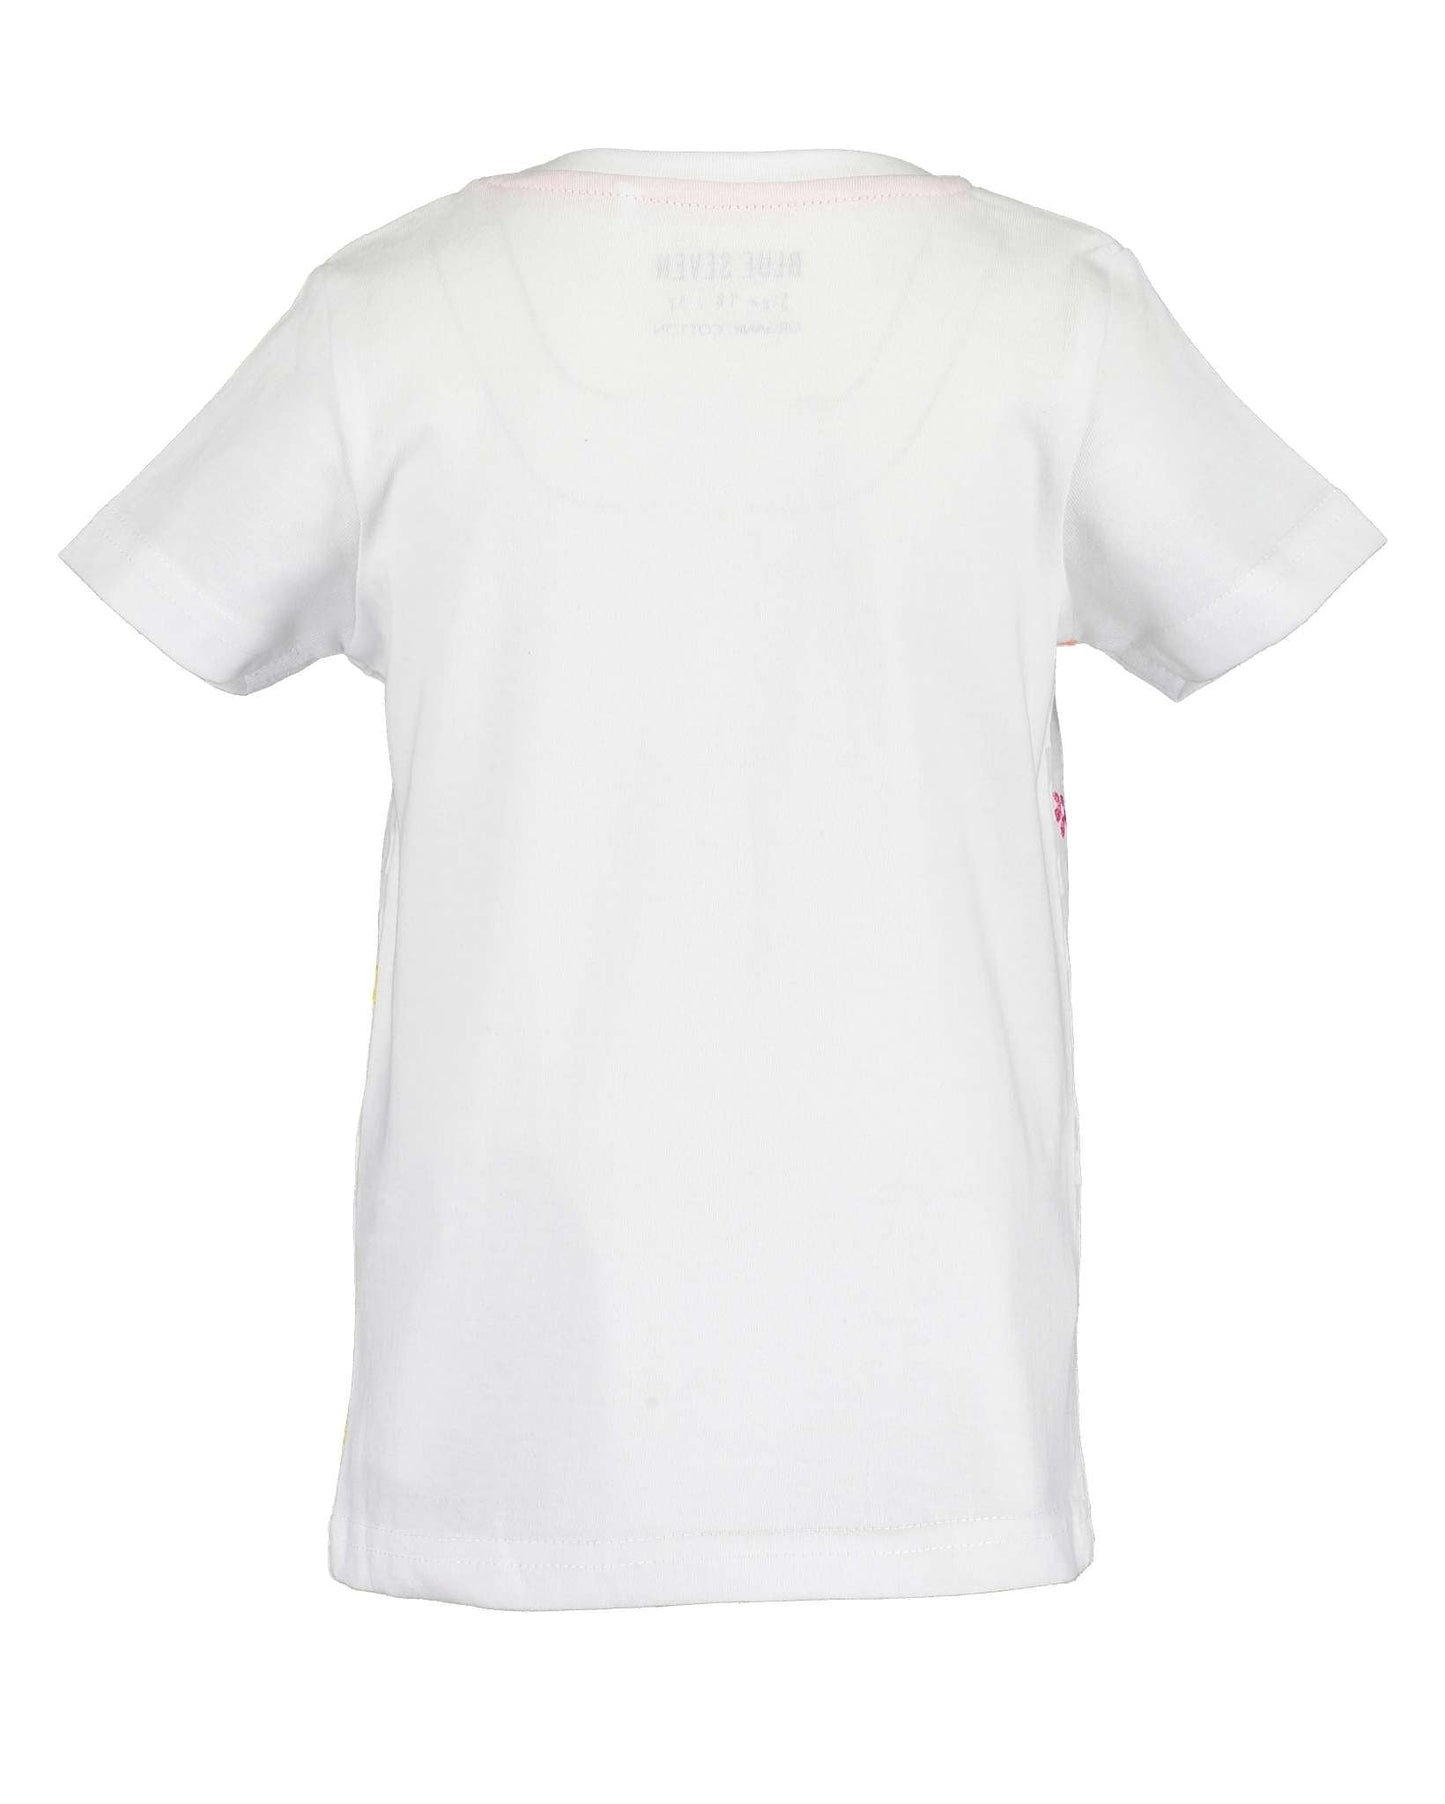 Girls White & Grey Striped Koala T Shirt - Nana B Baby & Childrenswear Boutique